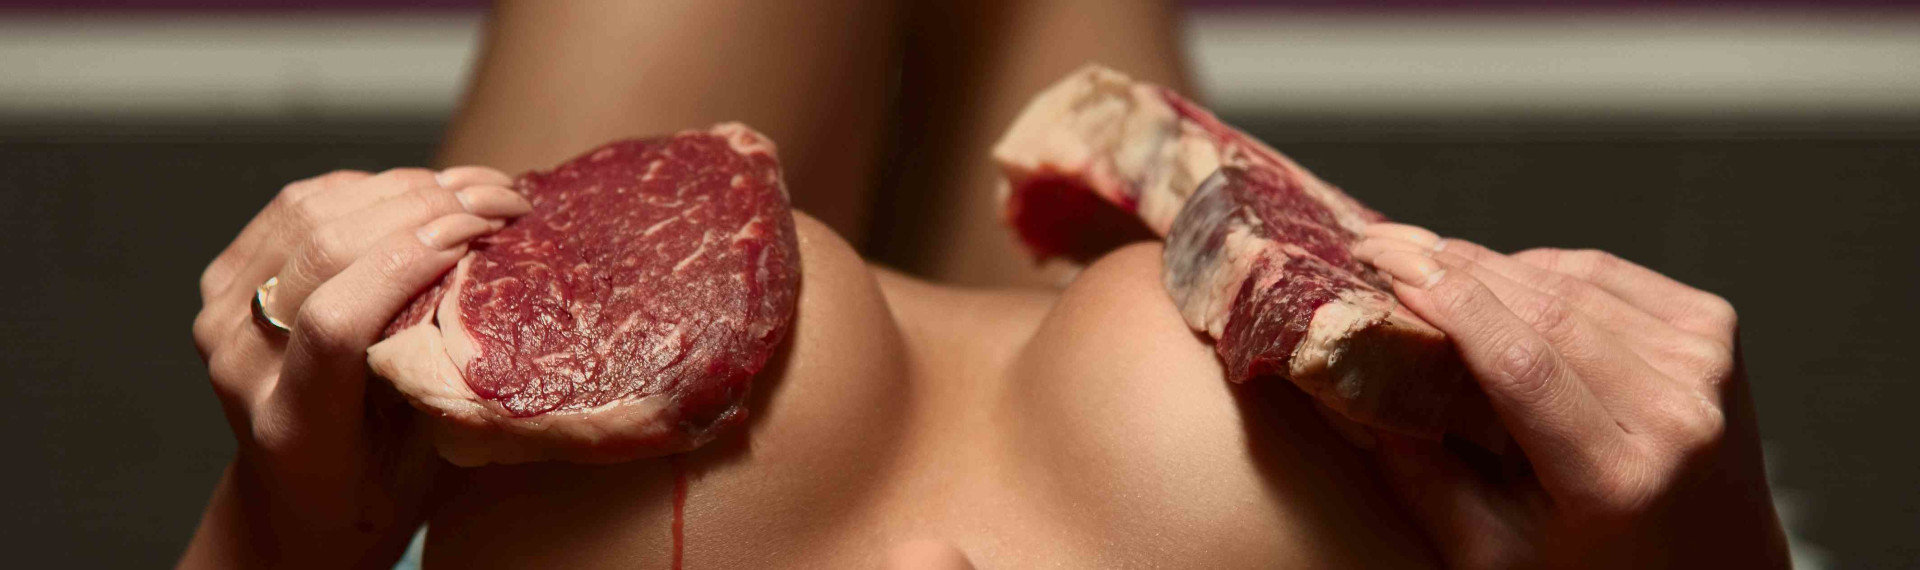 Steak & Tits